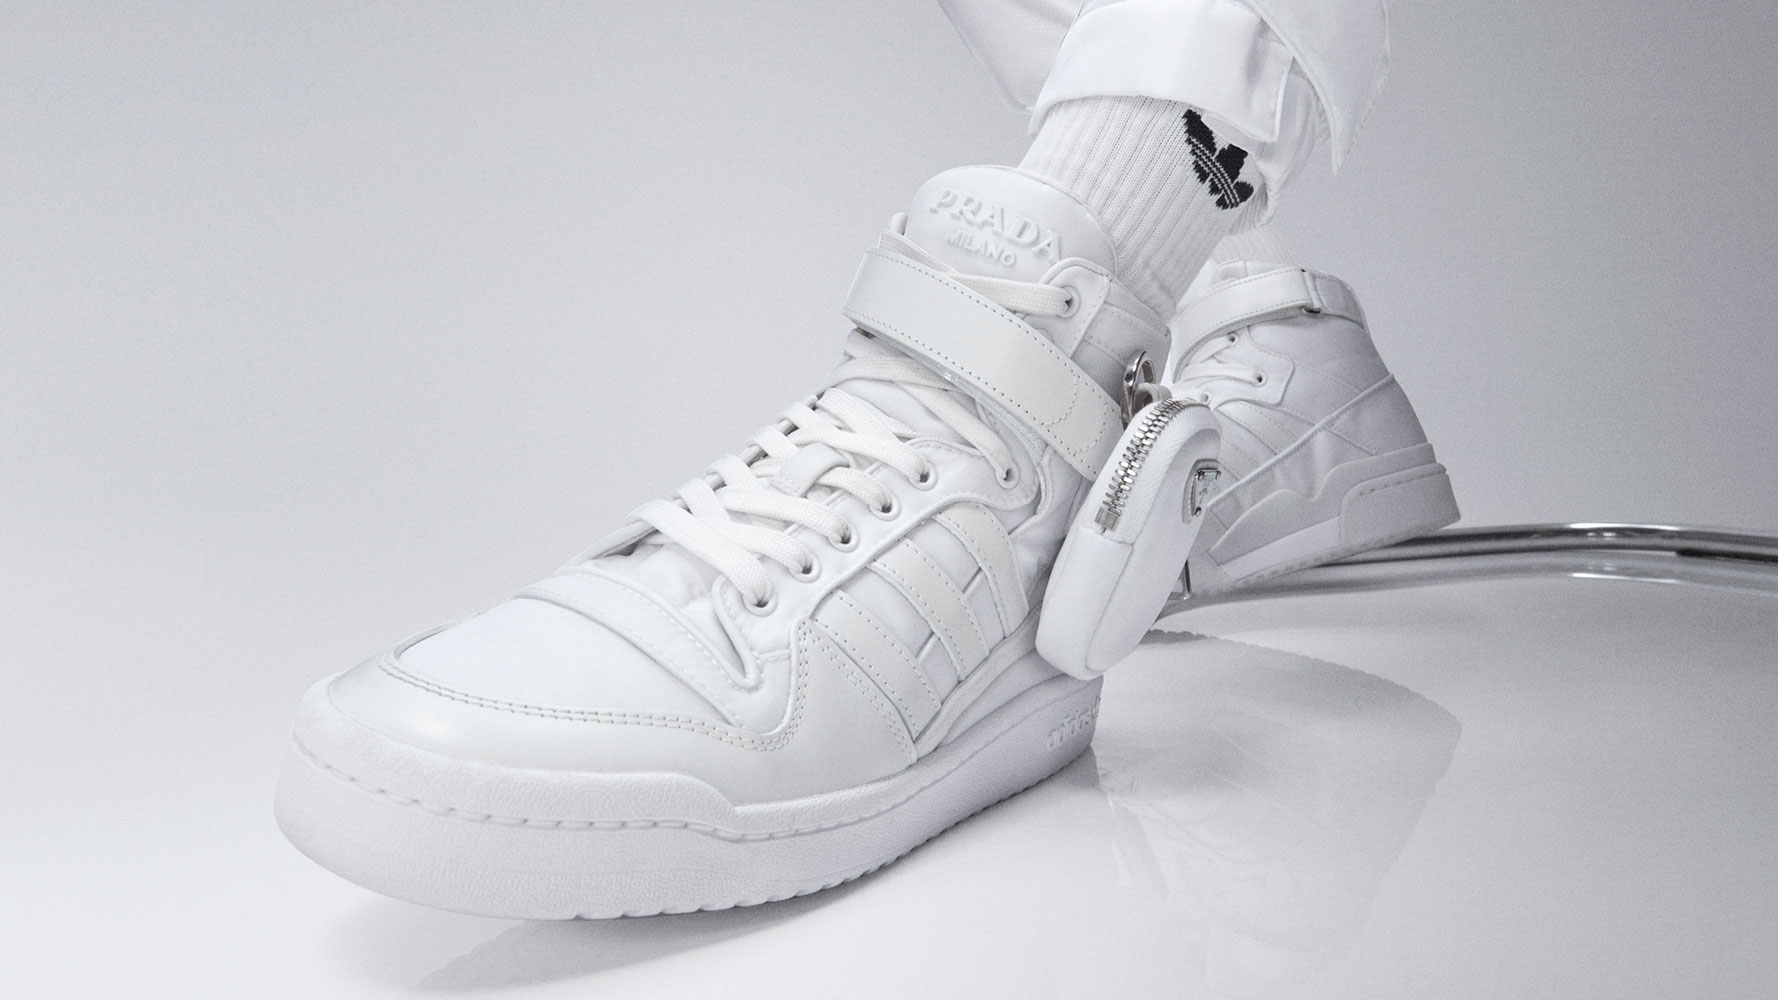 Prada và Adidas hợp tác sản xuất giày thế thao bằng chất liệu nhựa tái chế. Đây là lần thứ 3 mà hai thương hiệu này kết hợp với nhau.